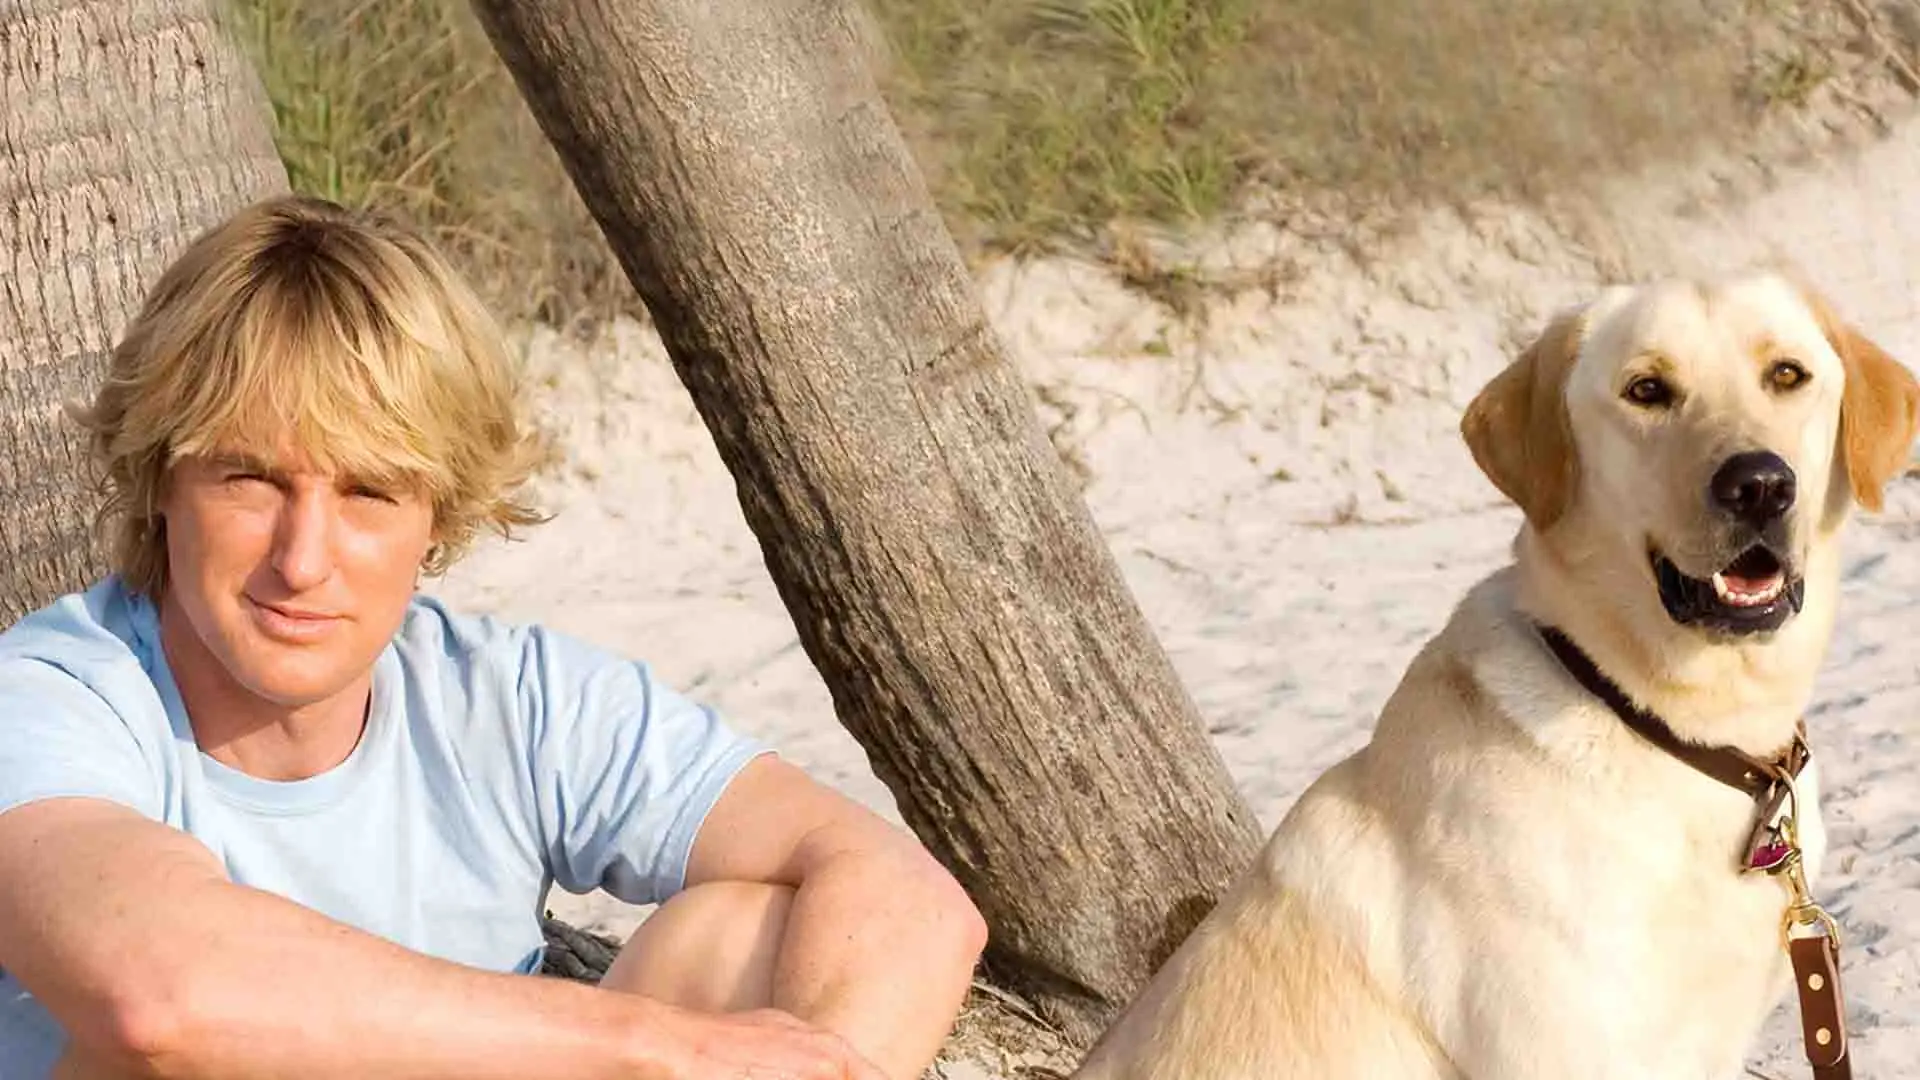 اوون ویلسون به همراه یک سگ در ساحل در فیلم Marley & Me